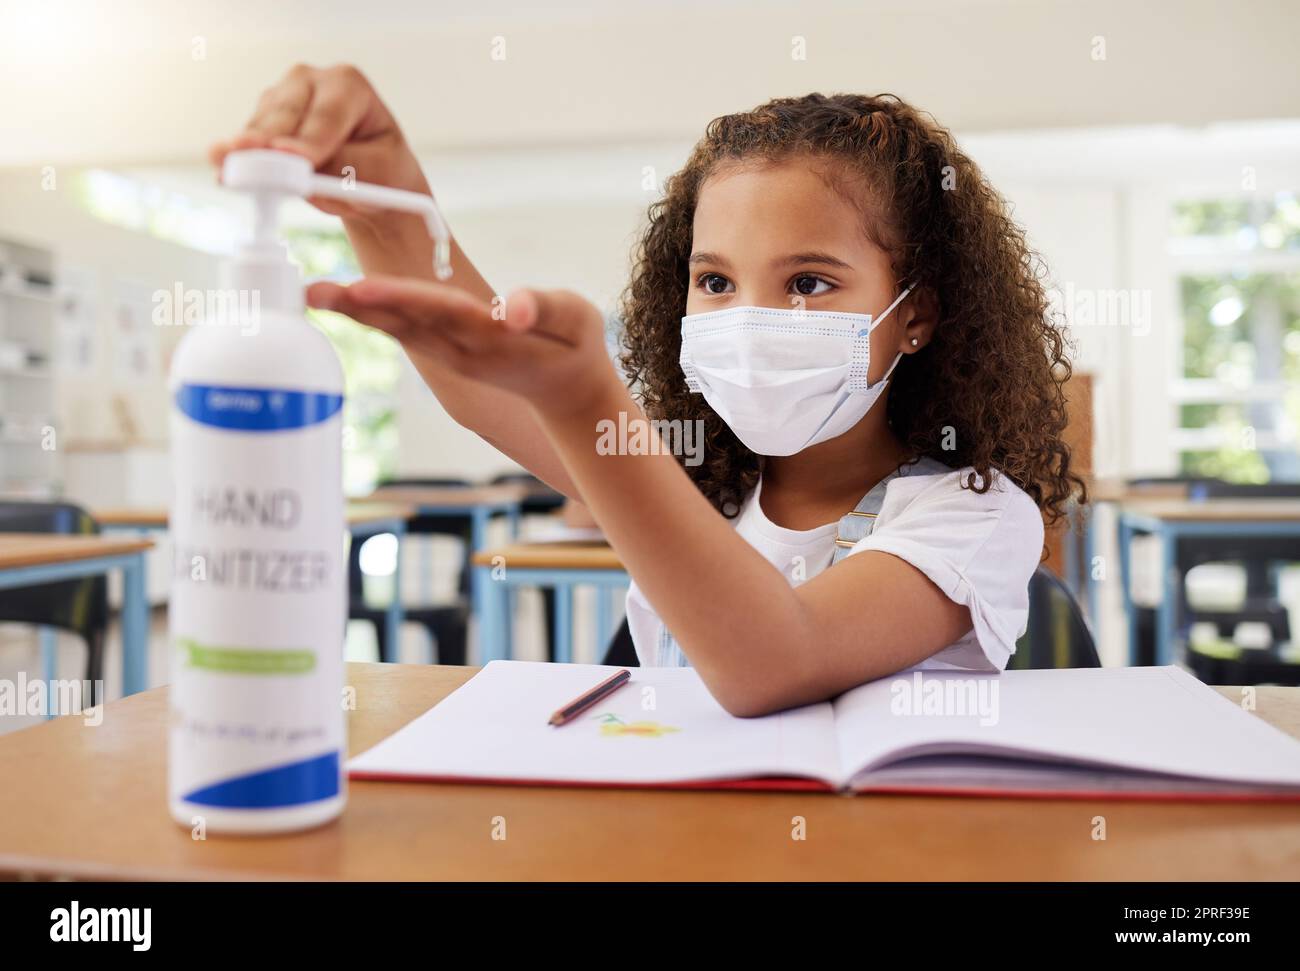 Desinfektionsmittel, heikle und saubere junge Frau in der Grundschule, die eine Maske in einem Klassenzimmer trägt. Ein Kind befolgt die Schutzbestimmungen von covid19, indem es seine Hände reinigt, um eine Infektion zu verhindern Stockfoto